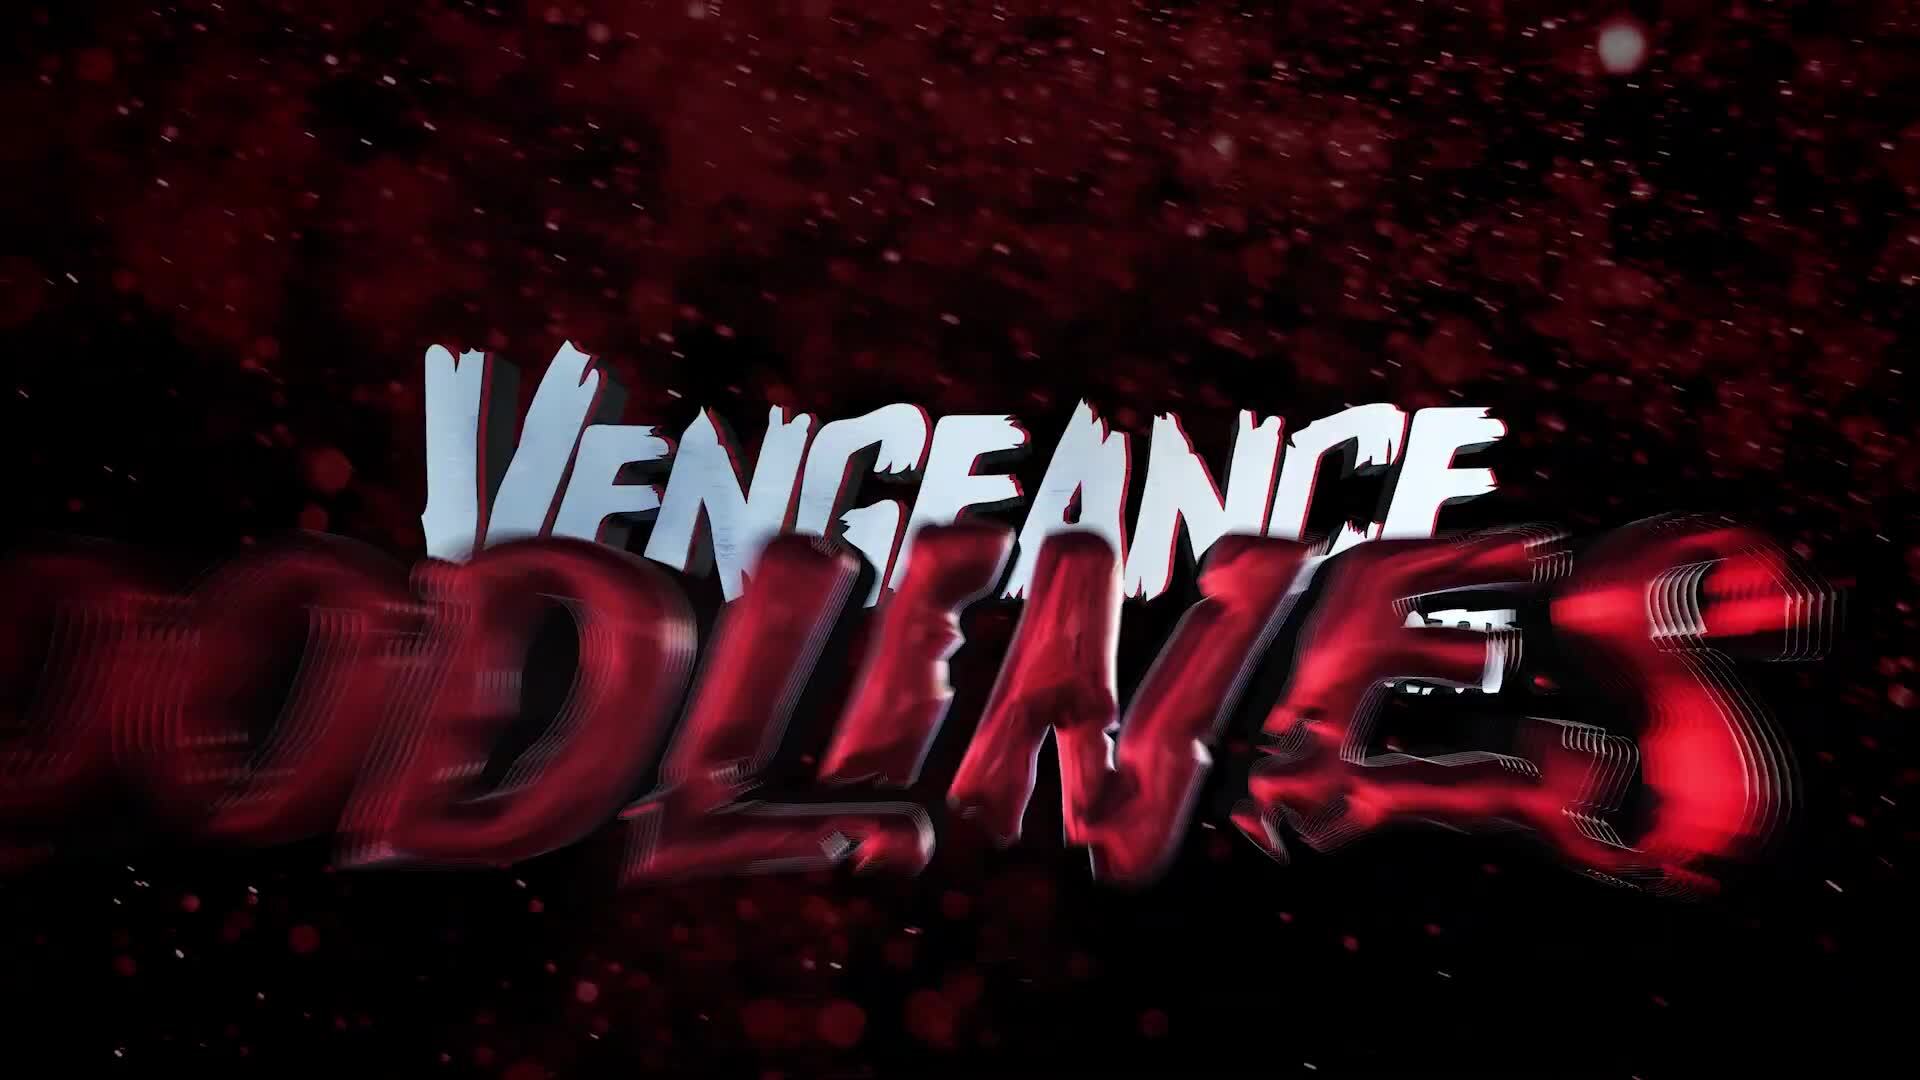 პარასკევი 13.  შურისძიება 2: სისხლის ხაზები / Friday the 13th Vengeance 2: Bloodlines